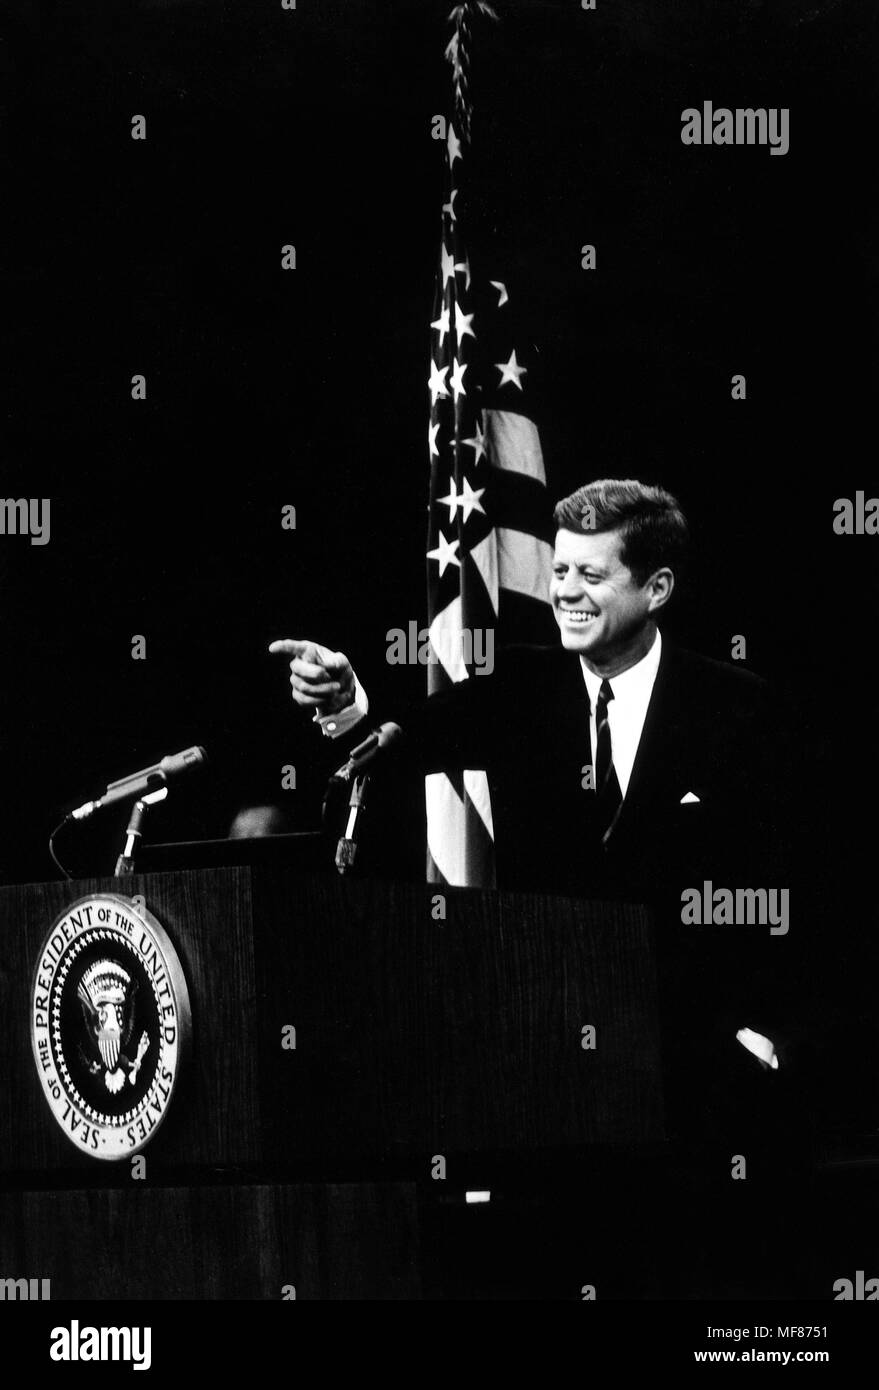 20. November 1962 Präsident Kennedy auf einer Pressekonferenz. State Department Auditorium, Washington, DC Bitte Kredit" Abbie Rowe, National Park Service/John Fitzgerald Kennedy Library, Boston" für das Bild. Stockfoto